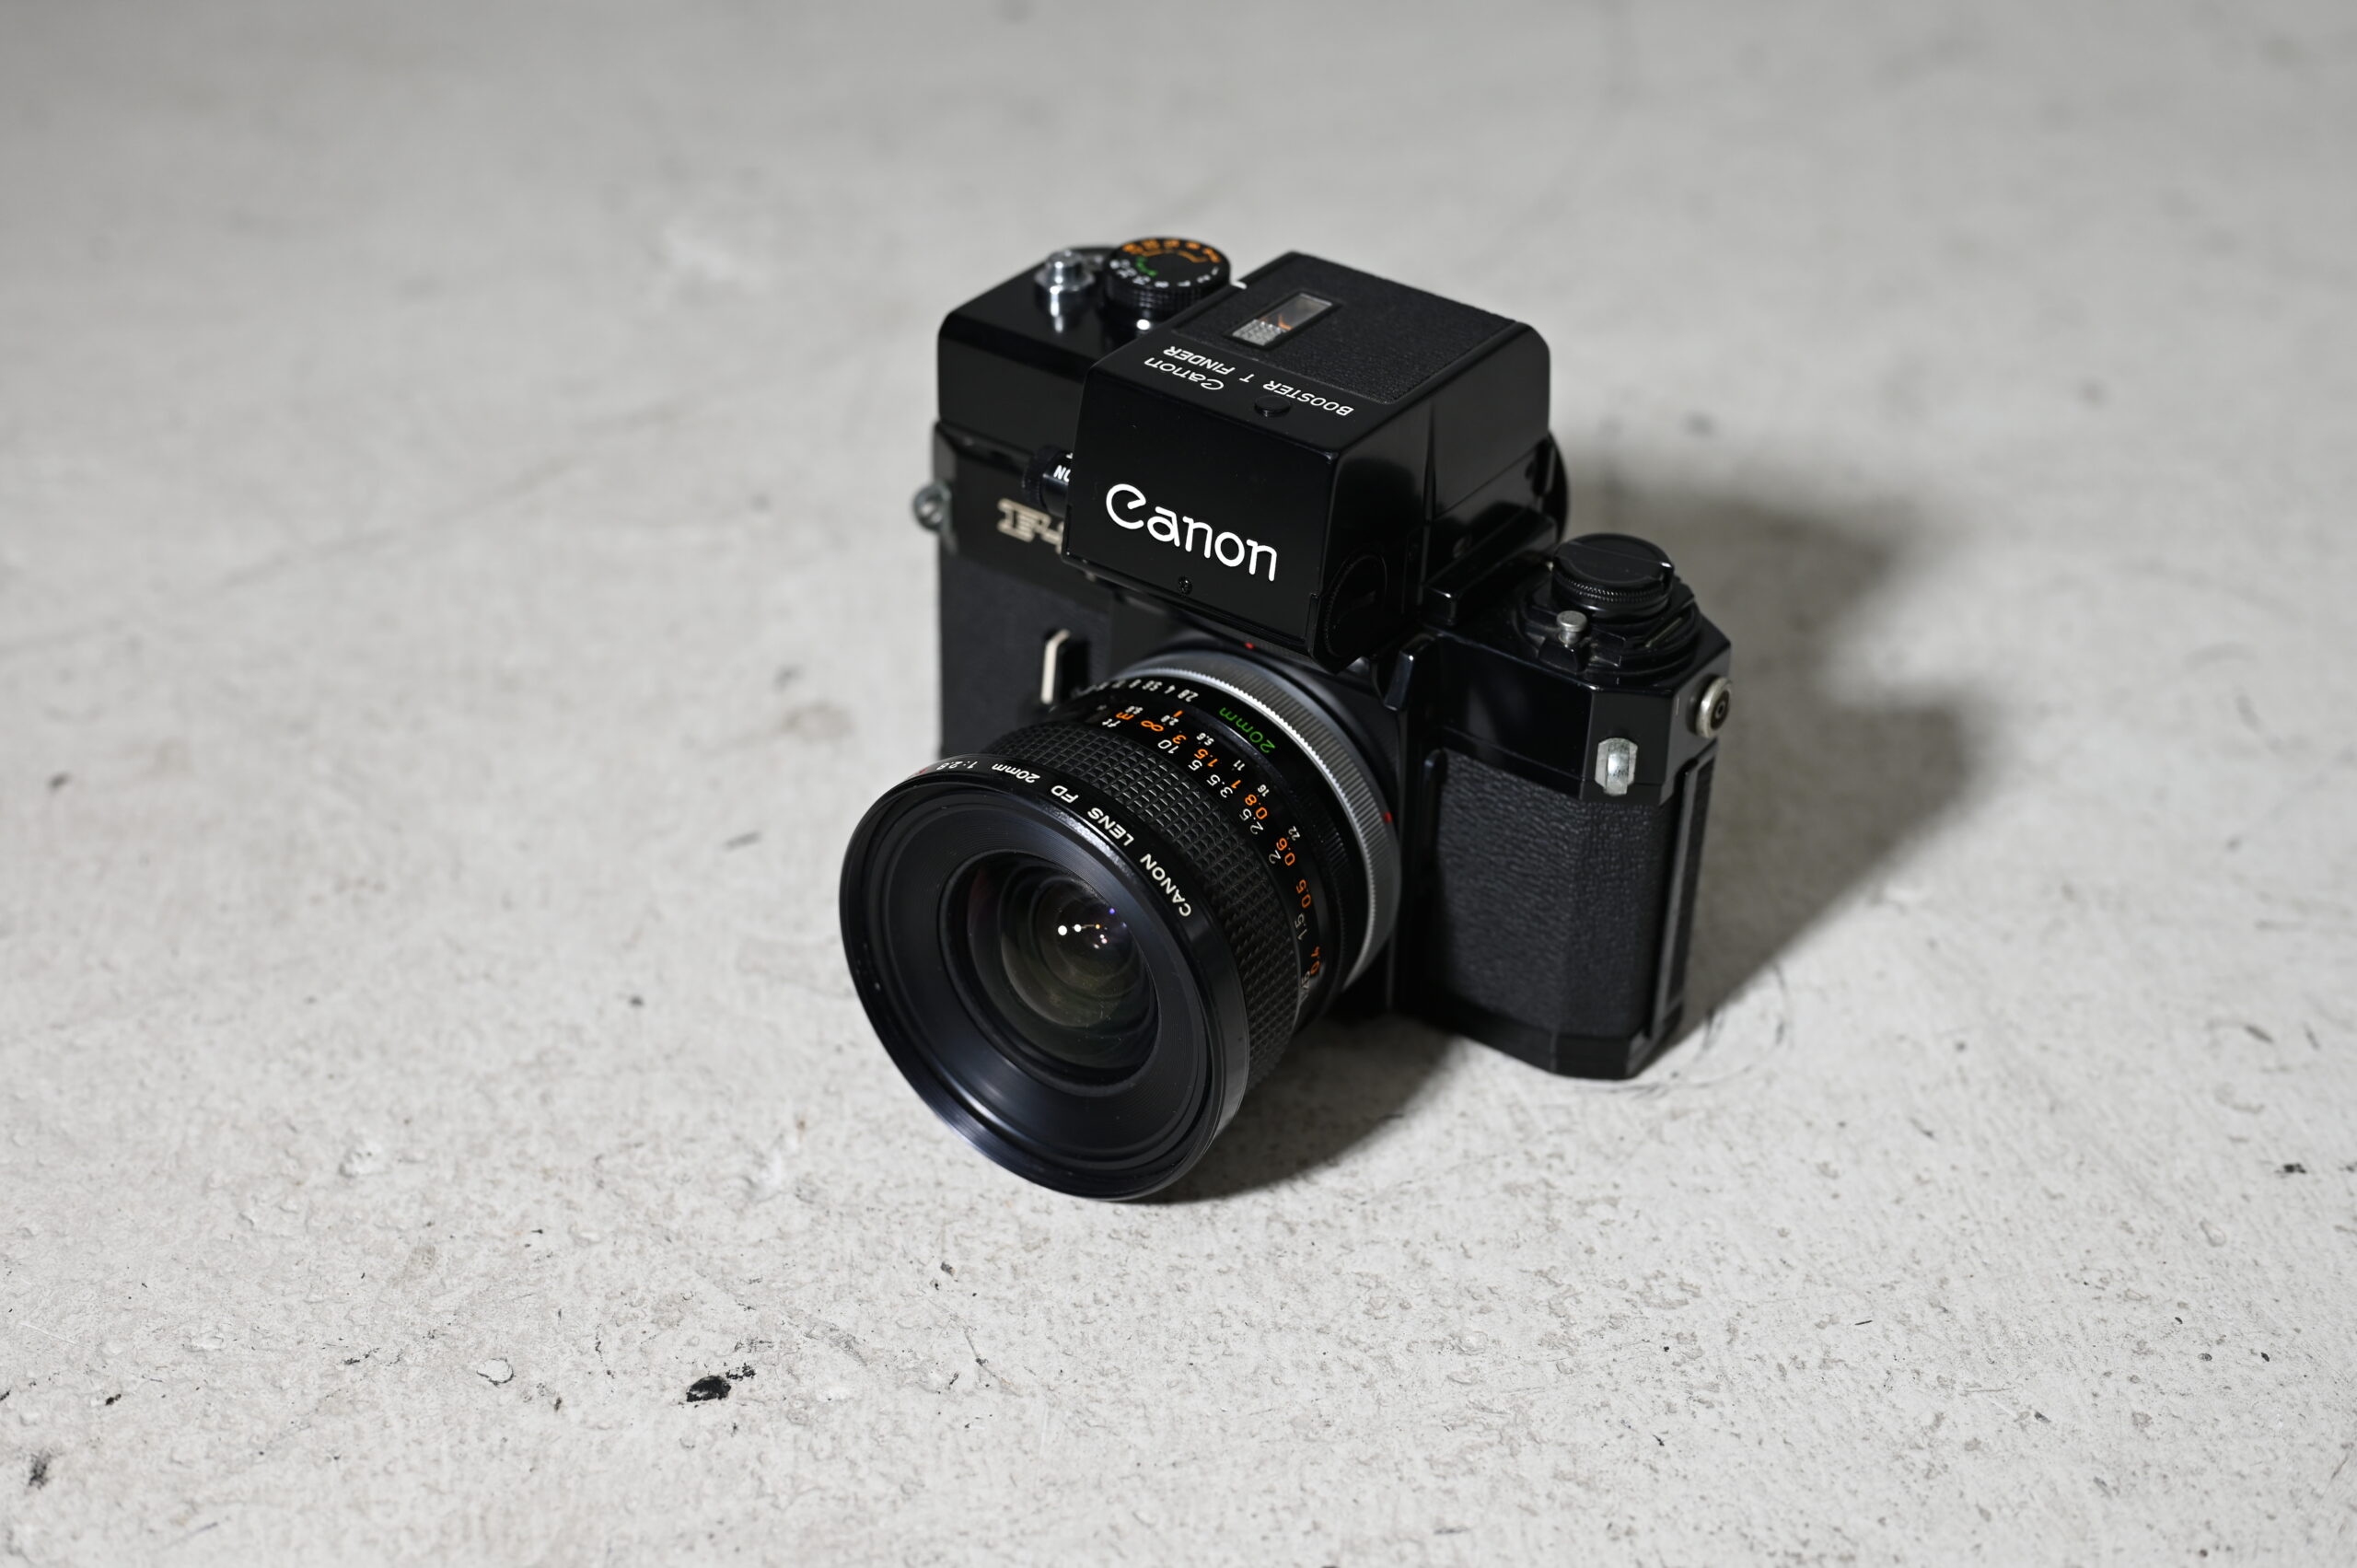 CANON/キャノン 一眼 カメラ F1 FD20mm 1:2.8 S.S.C. レンズ付き